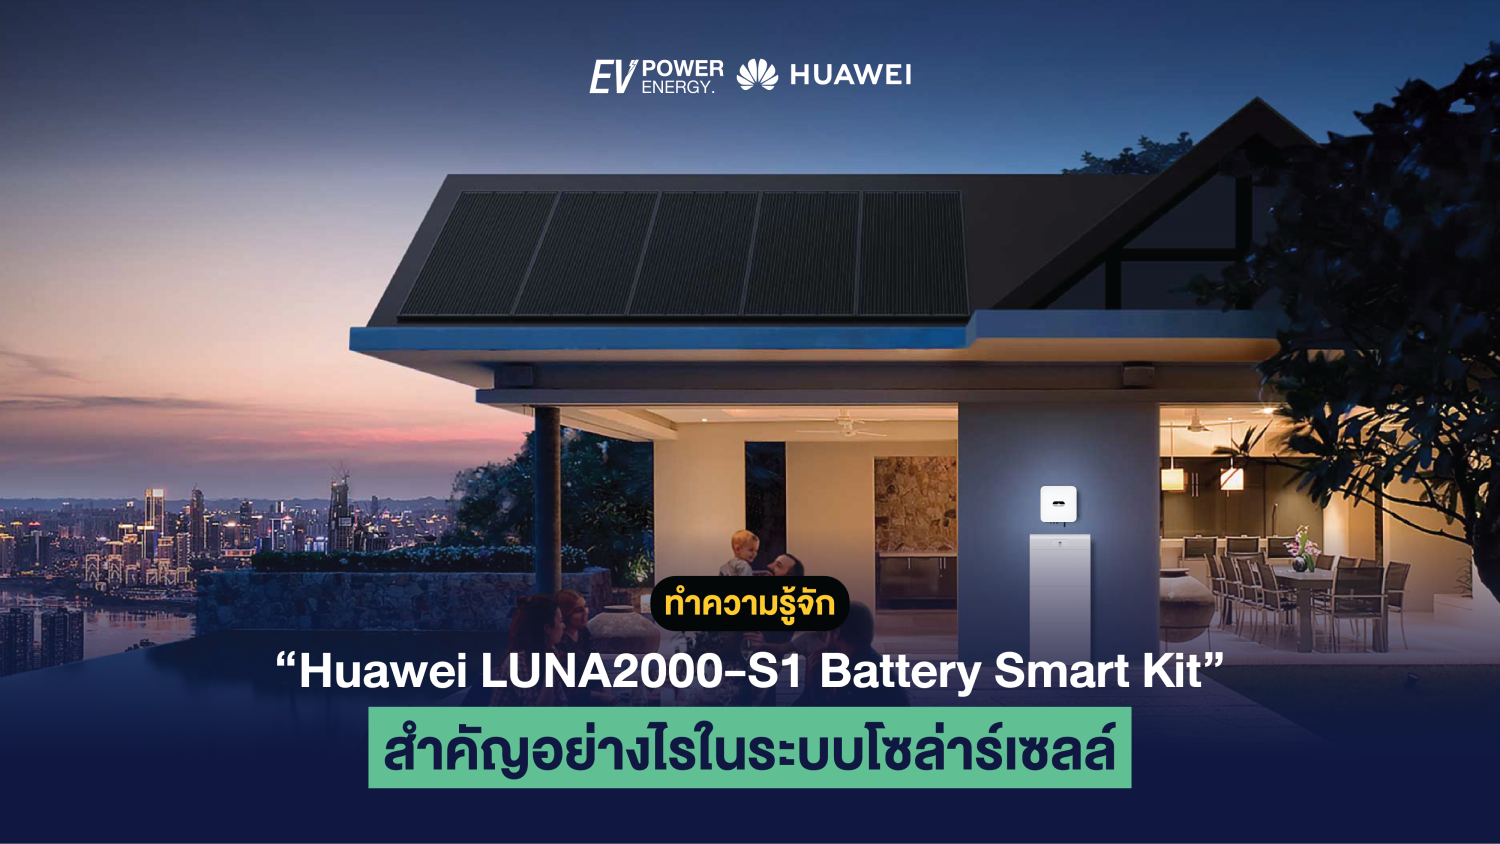 ทำความรู้จัก Huawei LUNA2000-S1 Battery Smart Kit สำคัญอย่างไรในระบบโซล่าร์เซลล์